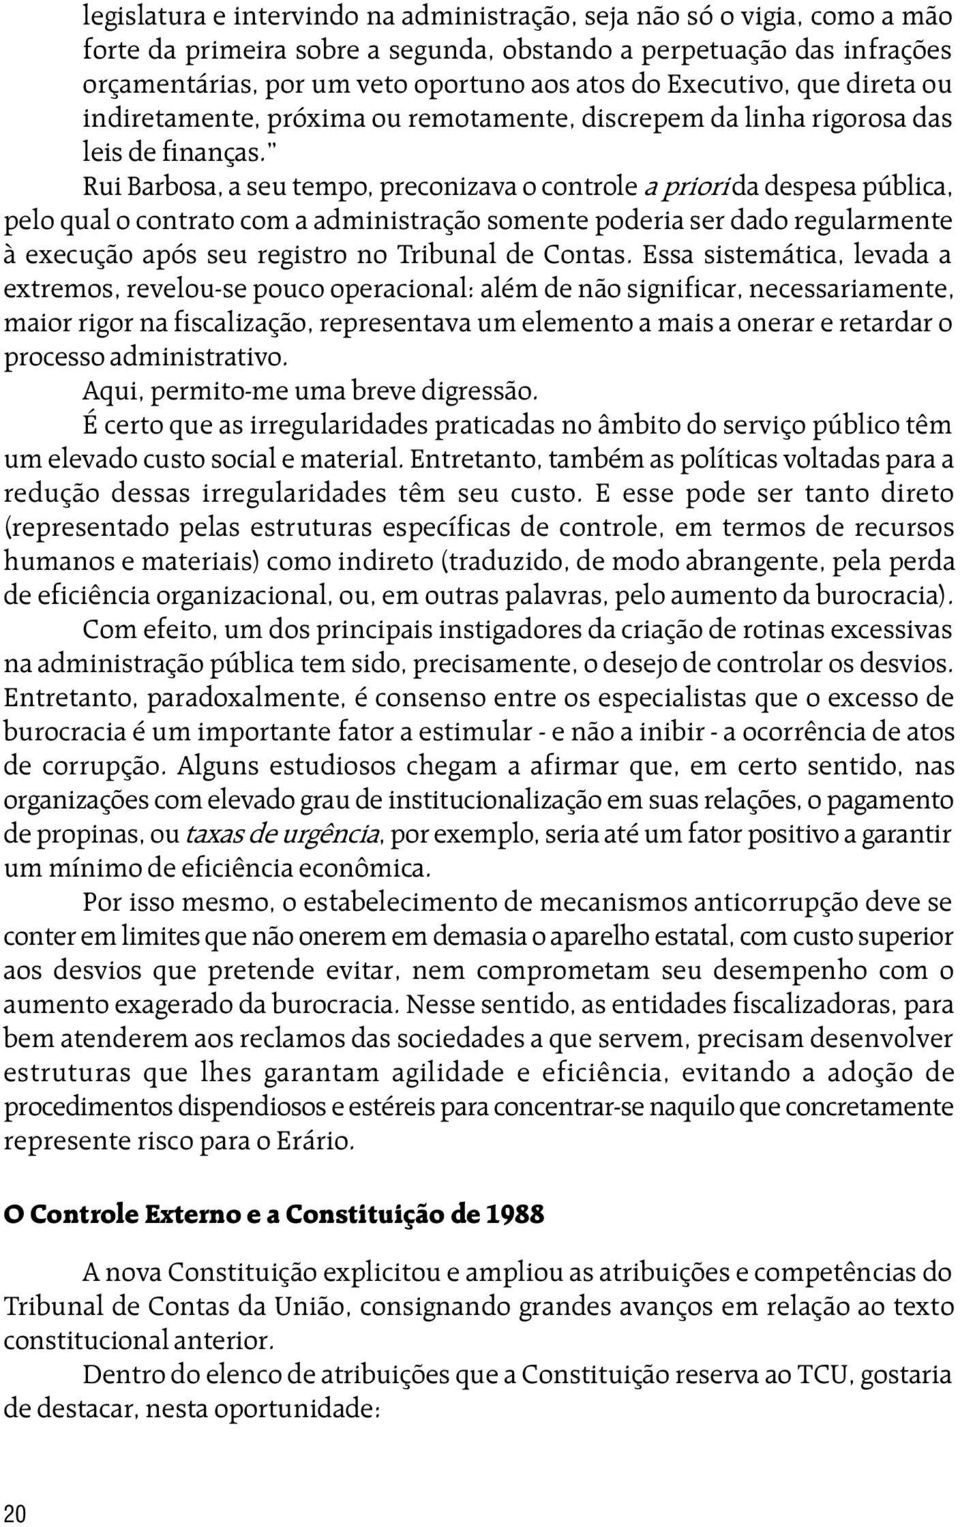 Rui Barbosa, a seu tempo, preconizava o controle a priori da despesa pública, pelo qual o contrato com a administração somente poderia ser dado regularmente à execução após seu registro no Tribunal